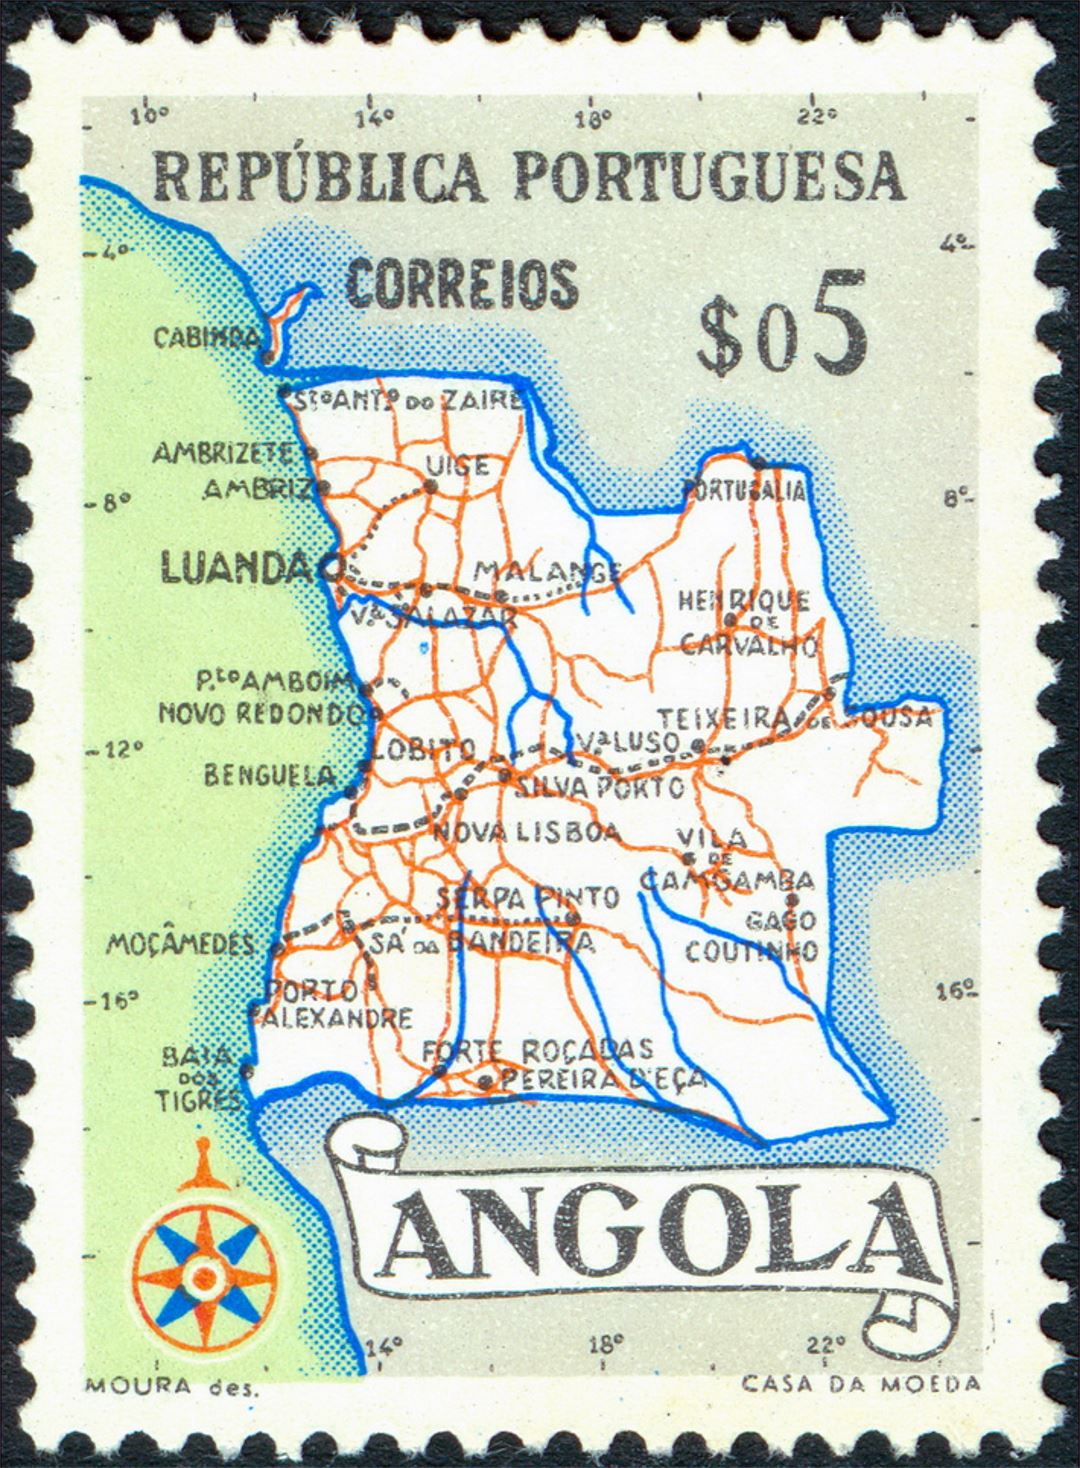 Подробная карта - почтовая марка Анголы